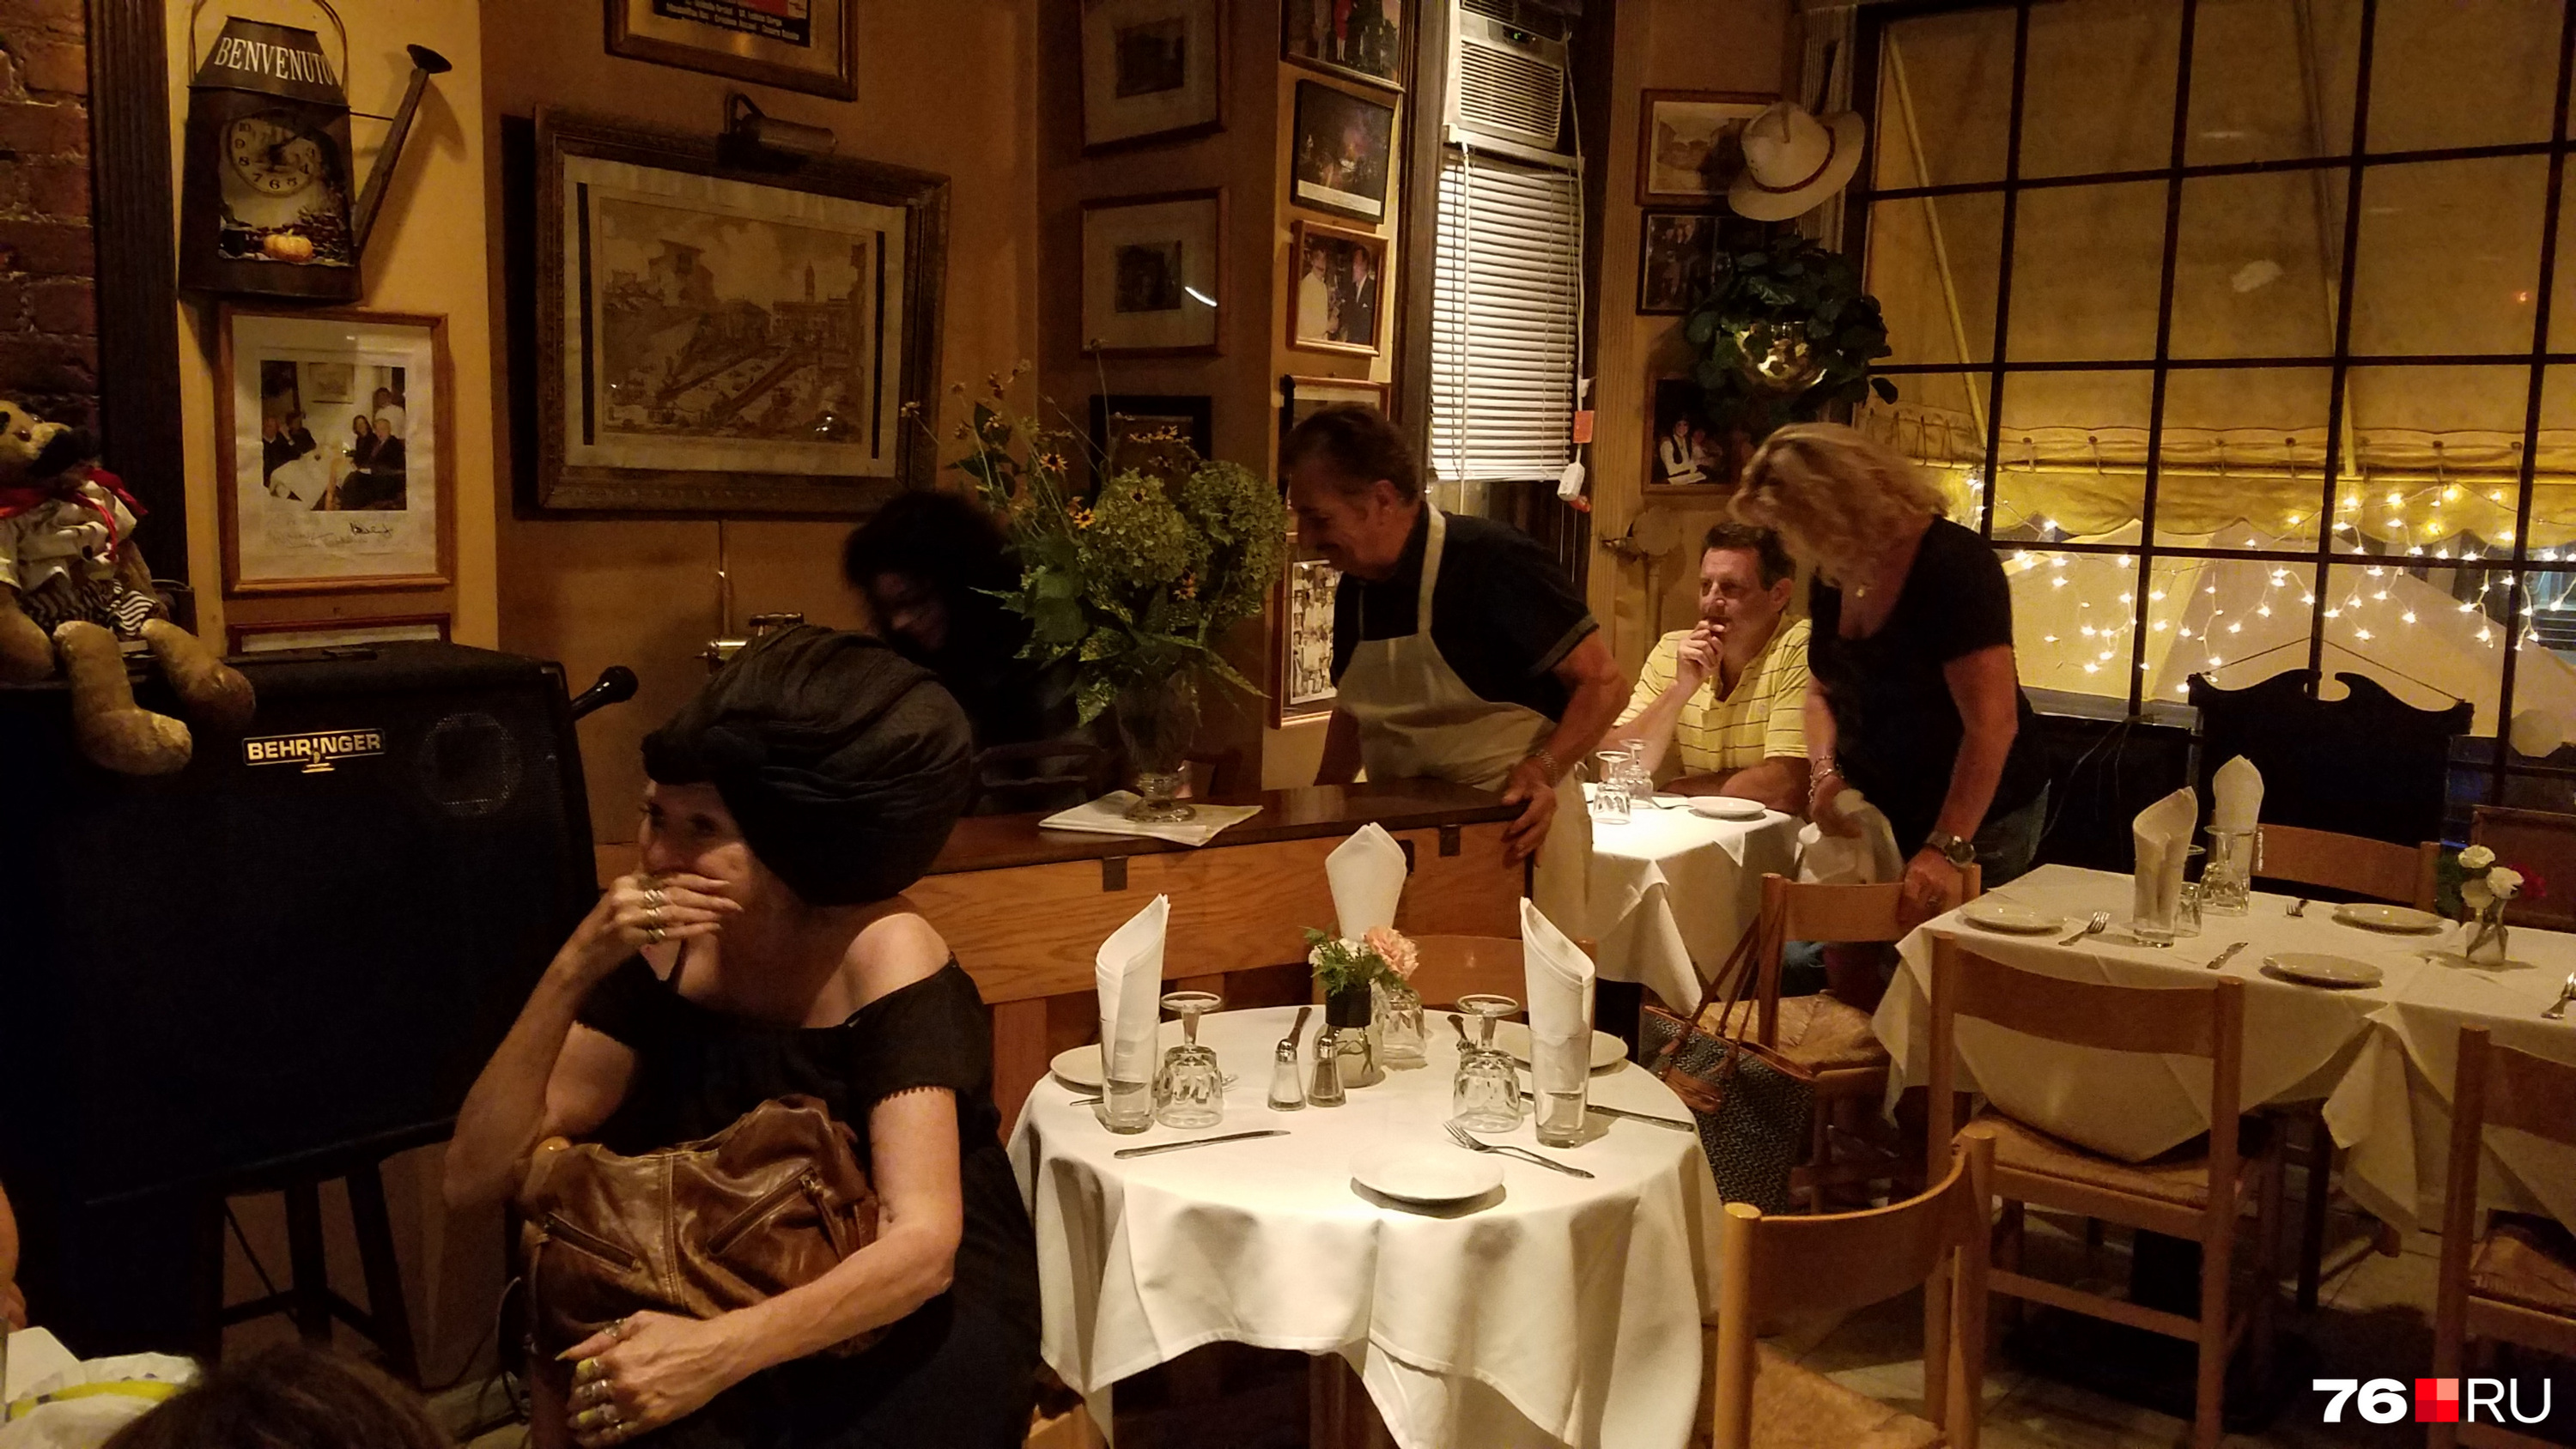 Жители Вашингтона любят ходить по ресторанам и сравнивать их